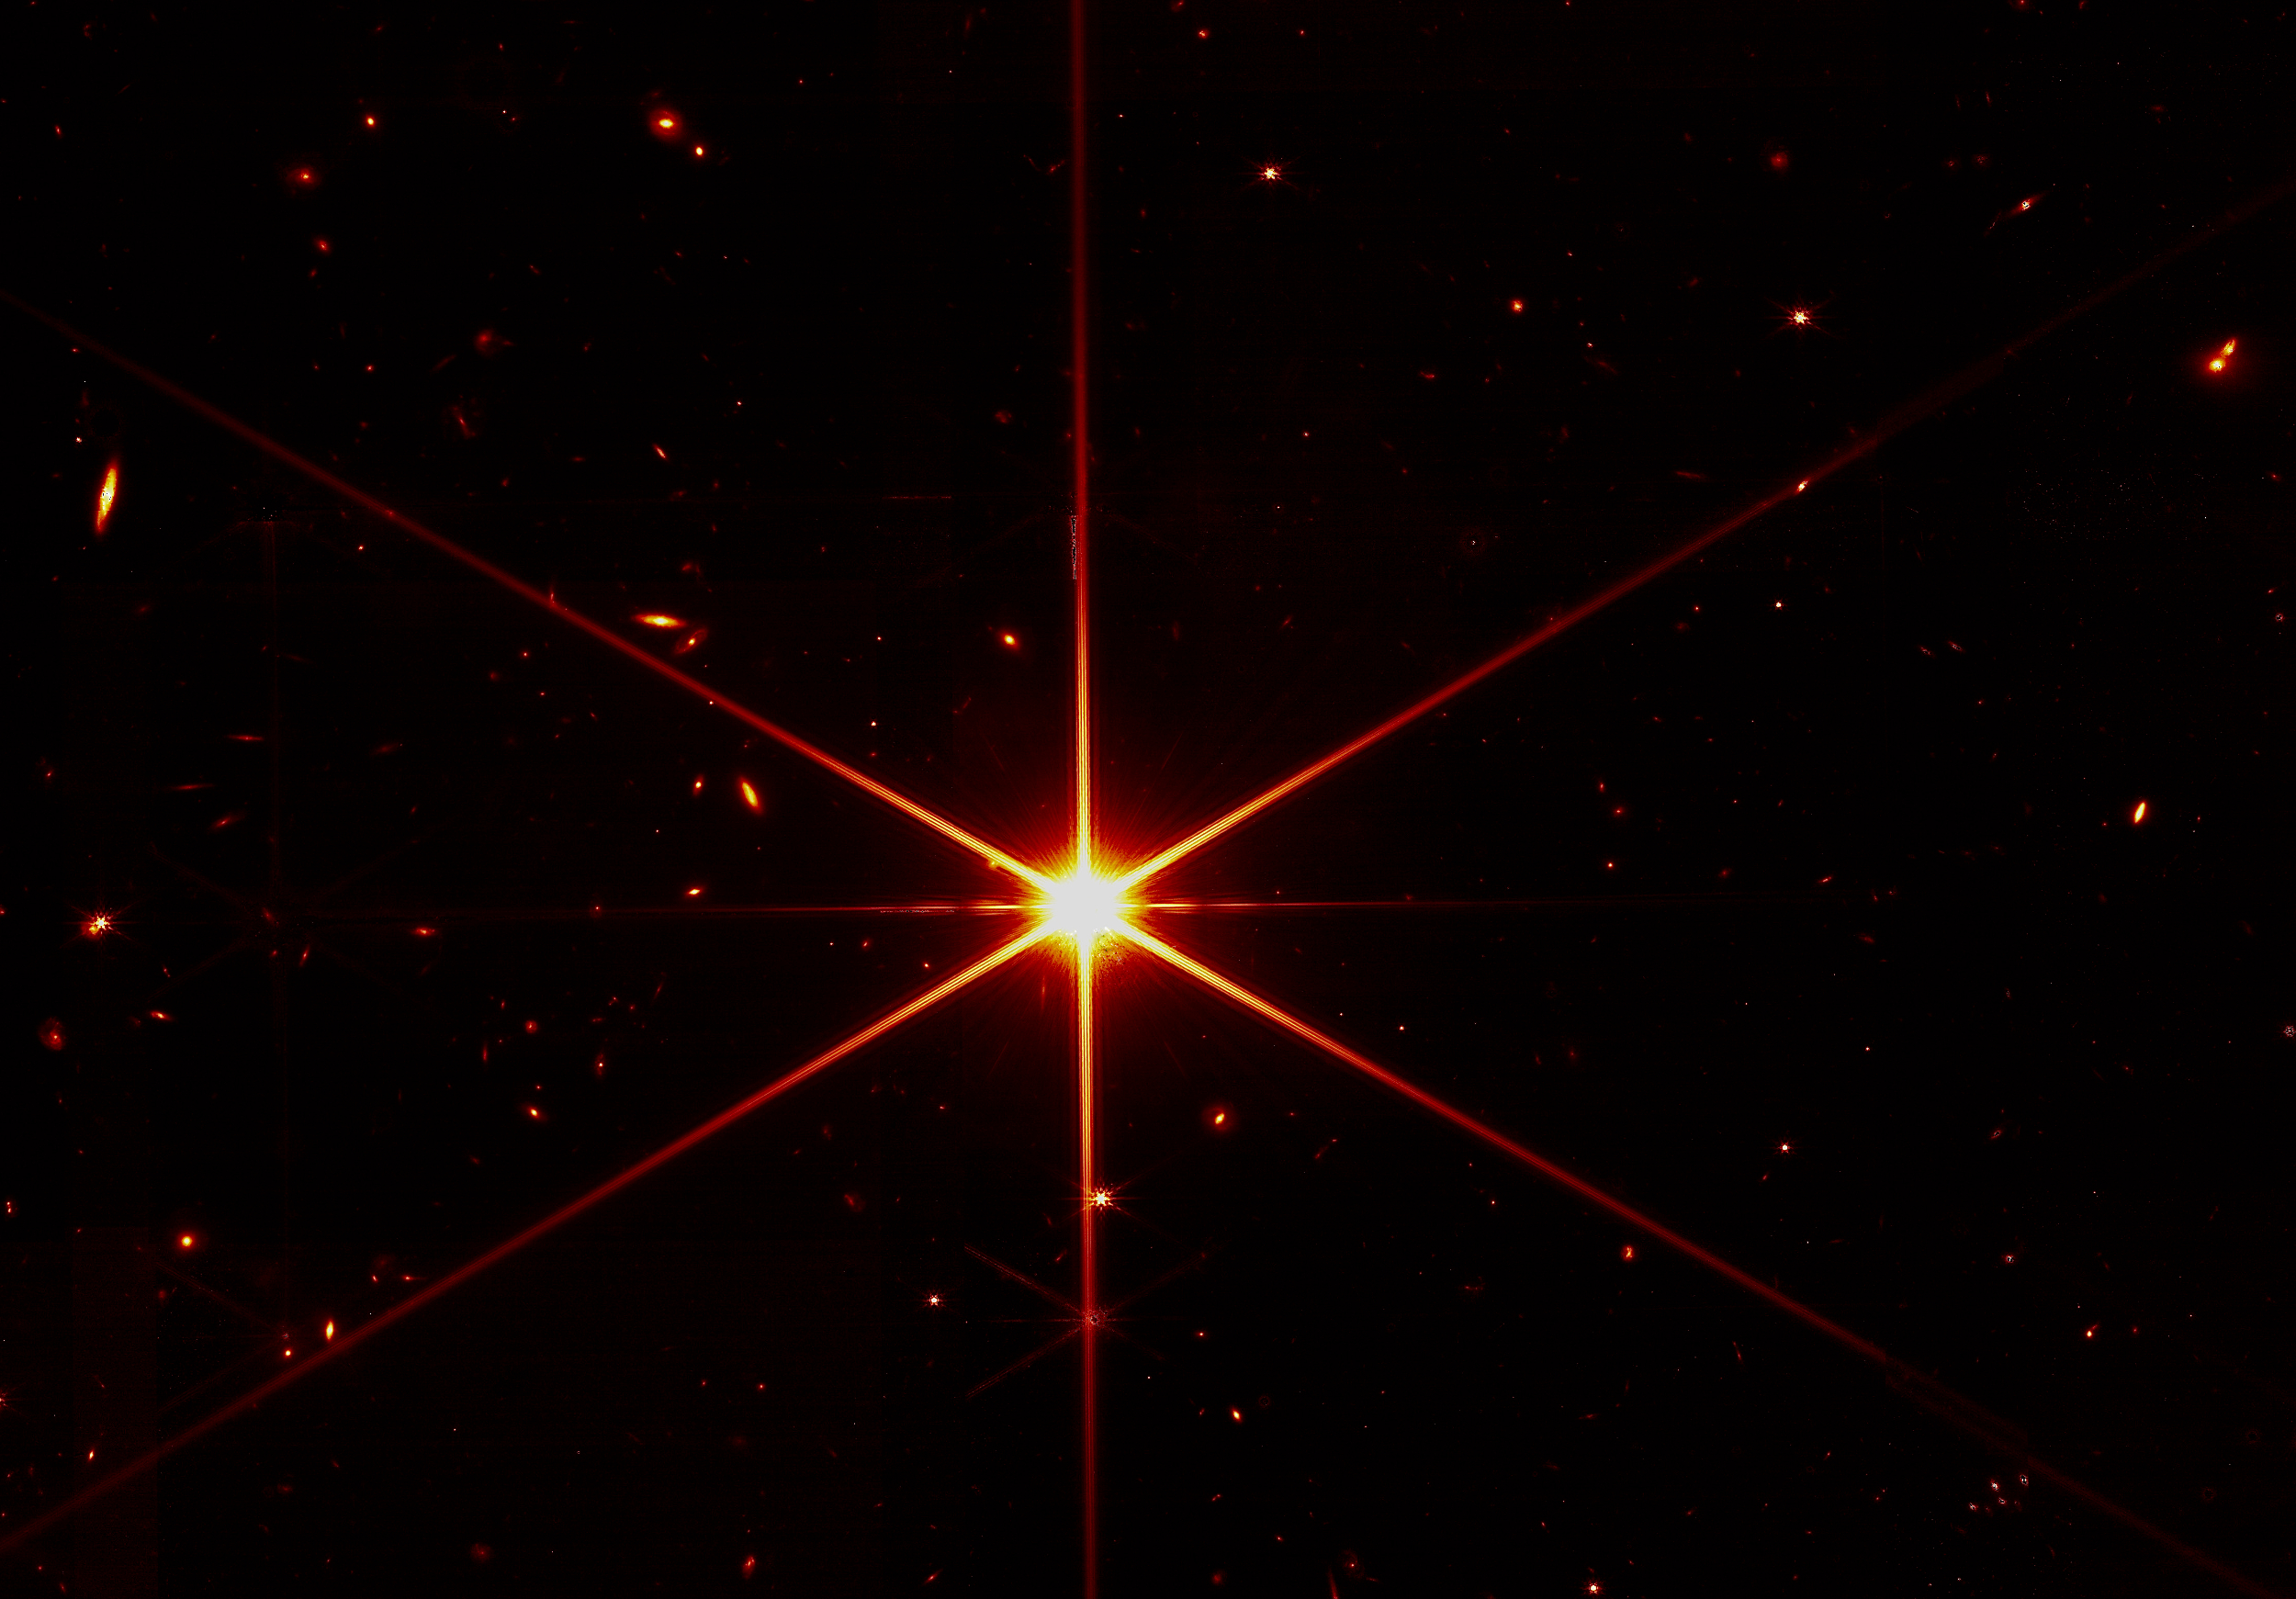 Skala w konstelacji Draco — pierwsza gwiazda Jamesa Webba